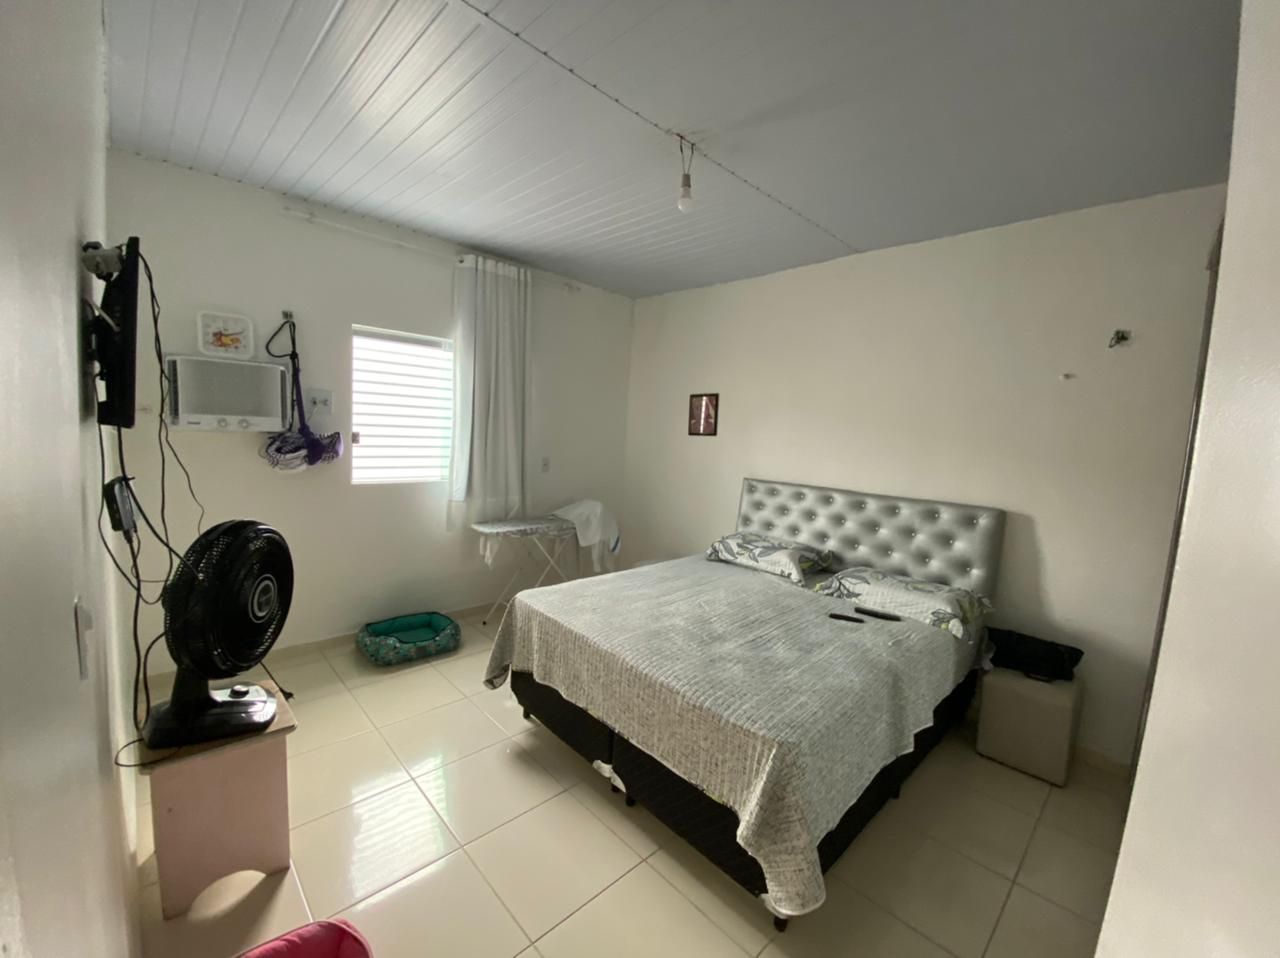 Casa com 3 dormitórios à venda, 100 m² por RS 350.000 - Cidade Nova - Manaus-AM